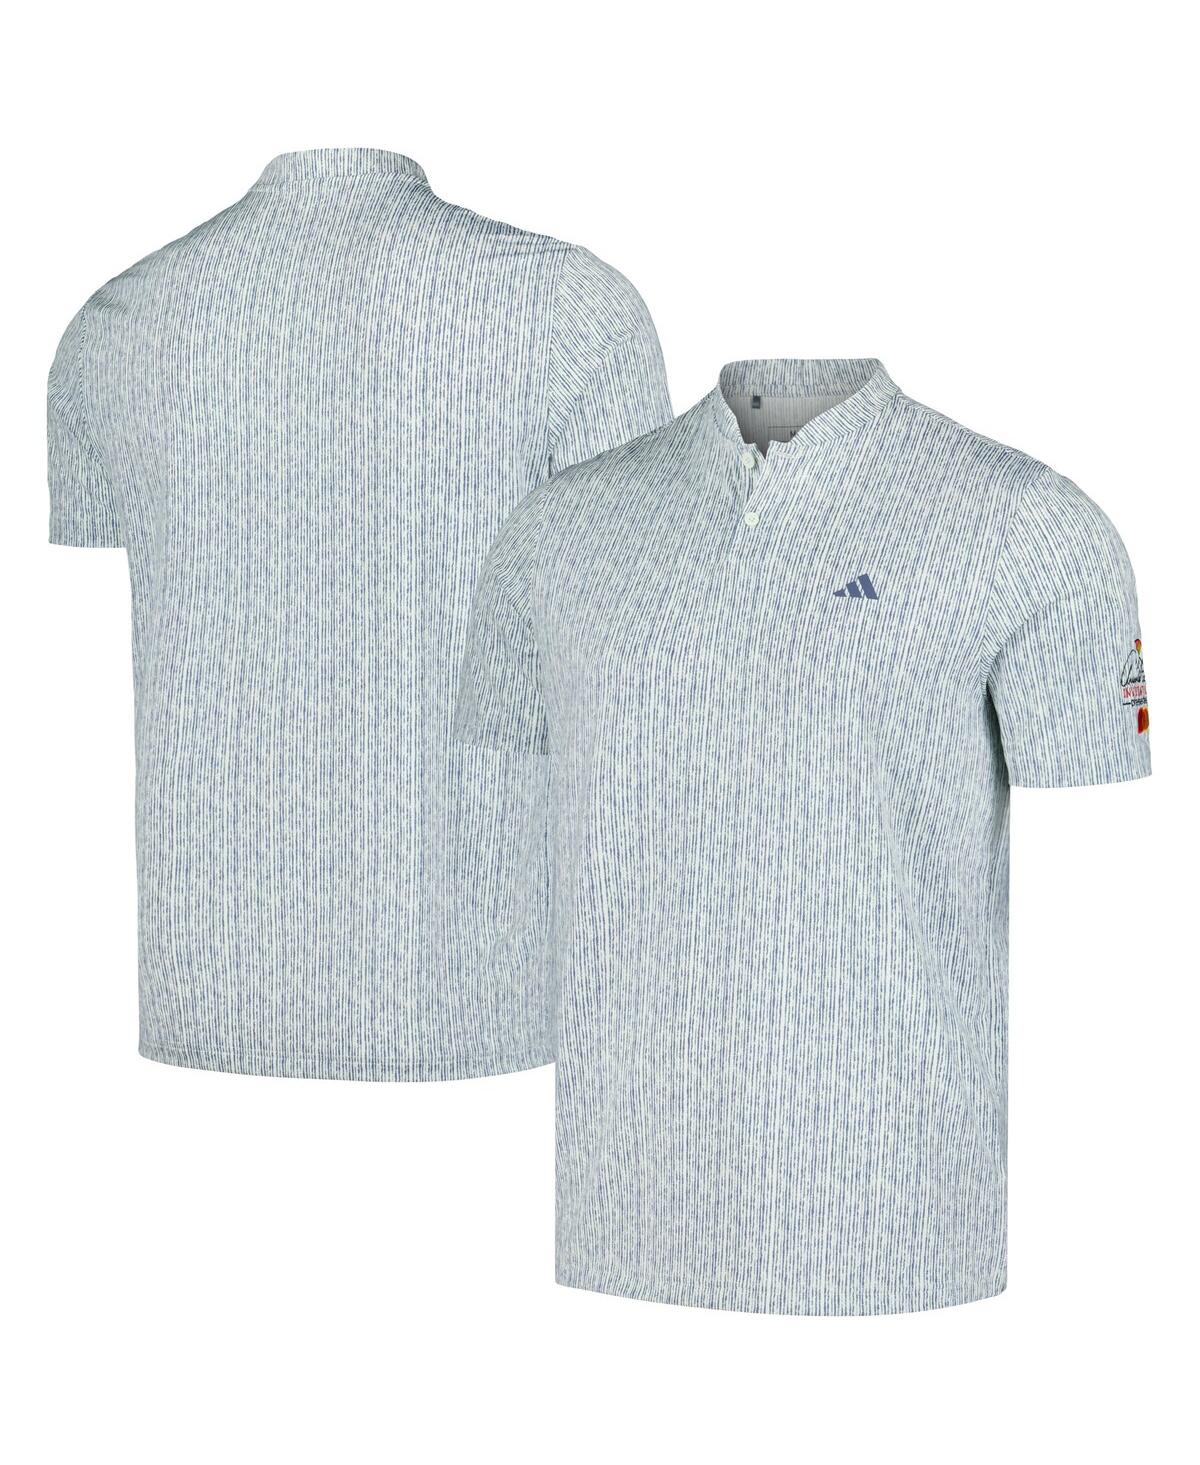 Adidas Originals Men's Light Blue Arnold Palmer Invitational Ultimate365 Polo Shirt